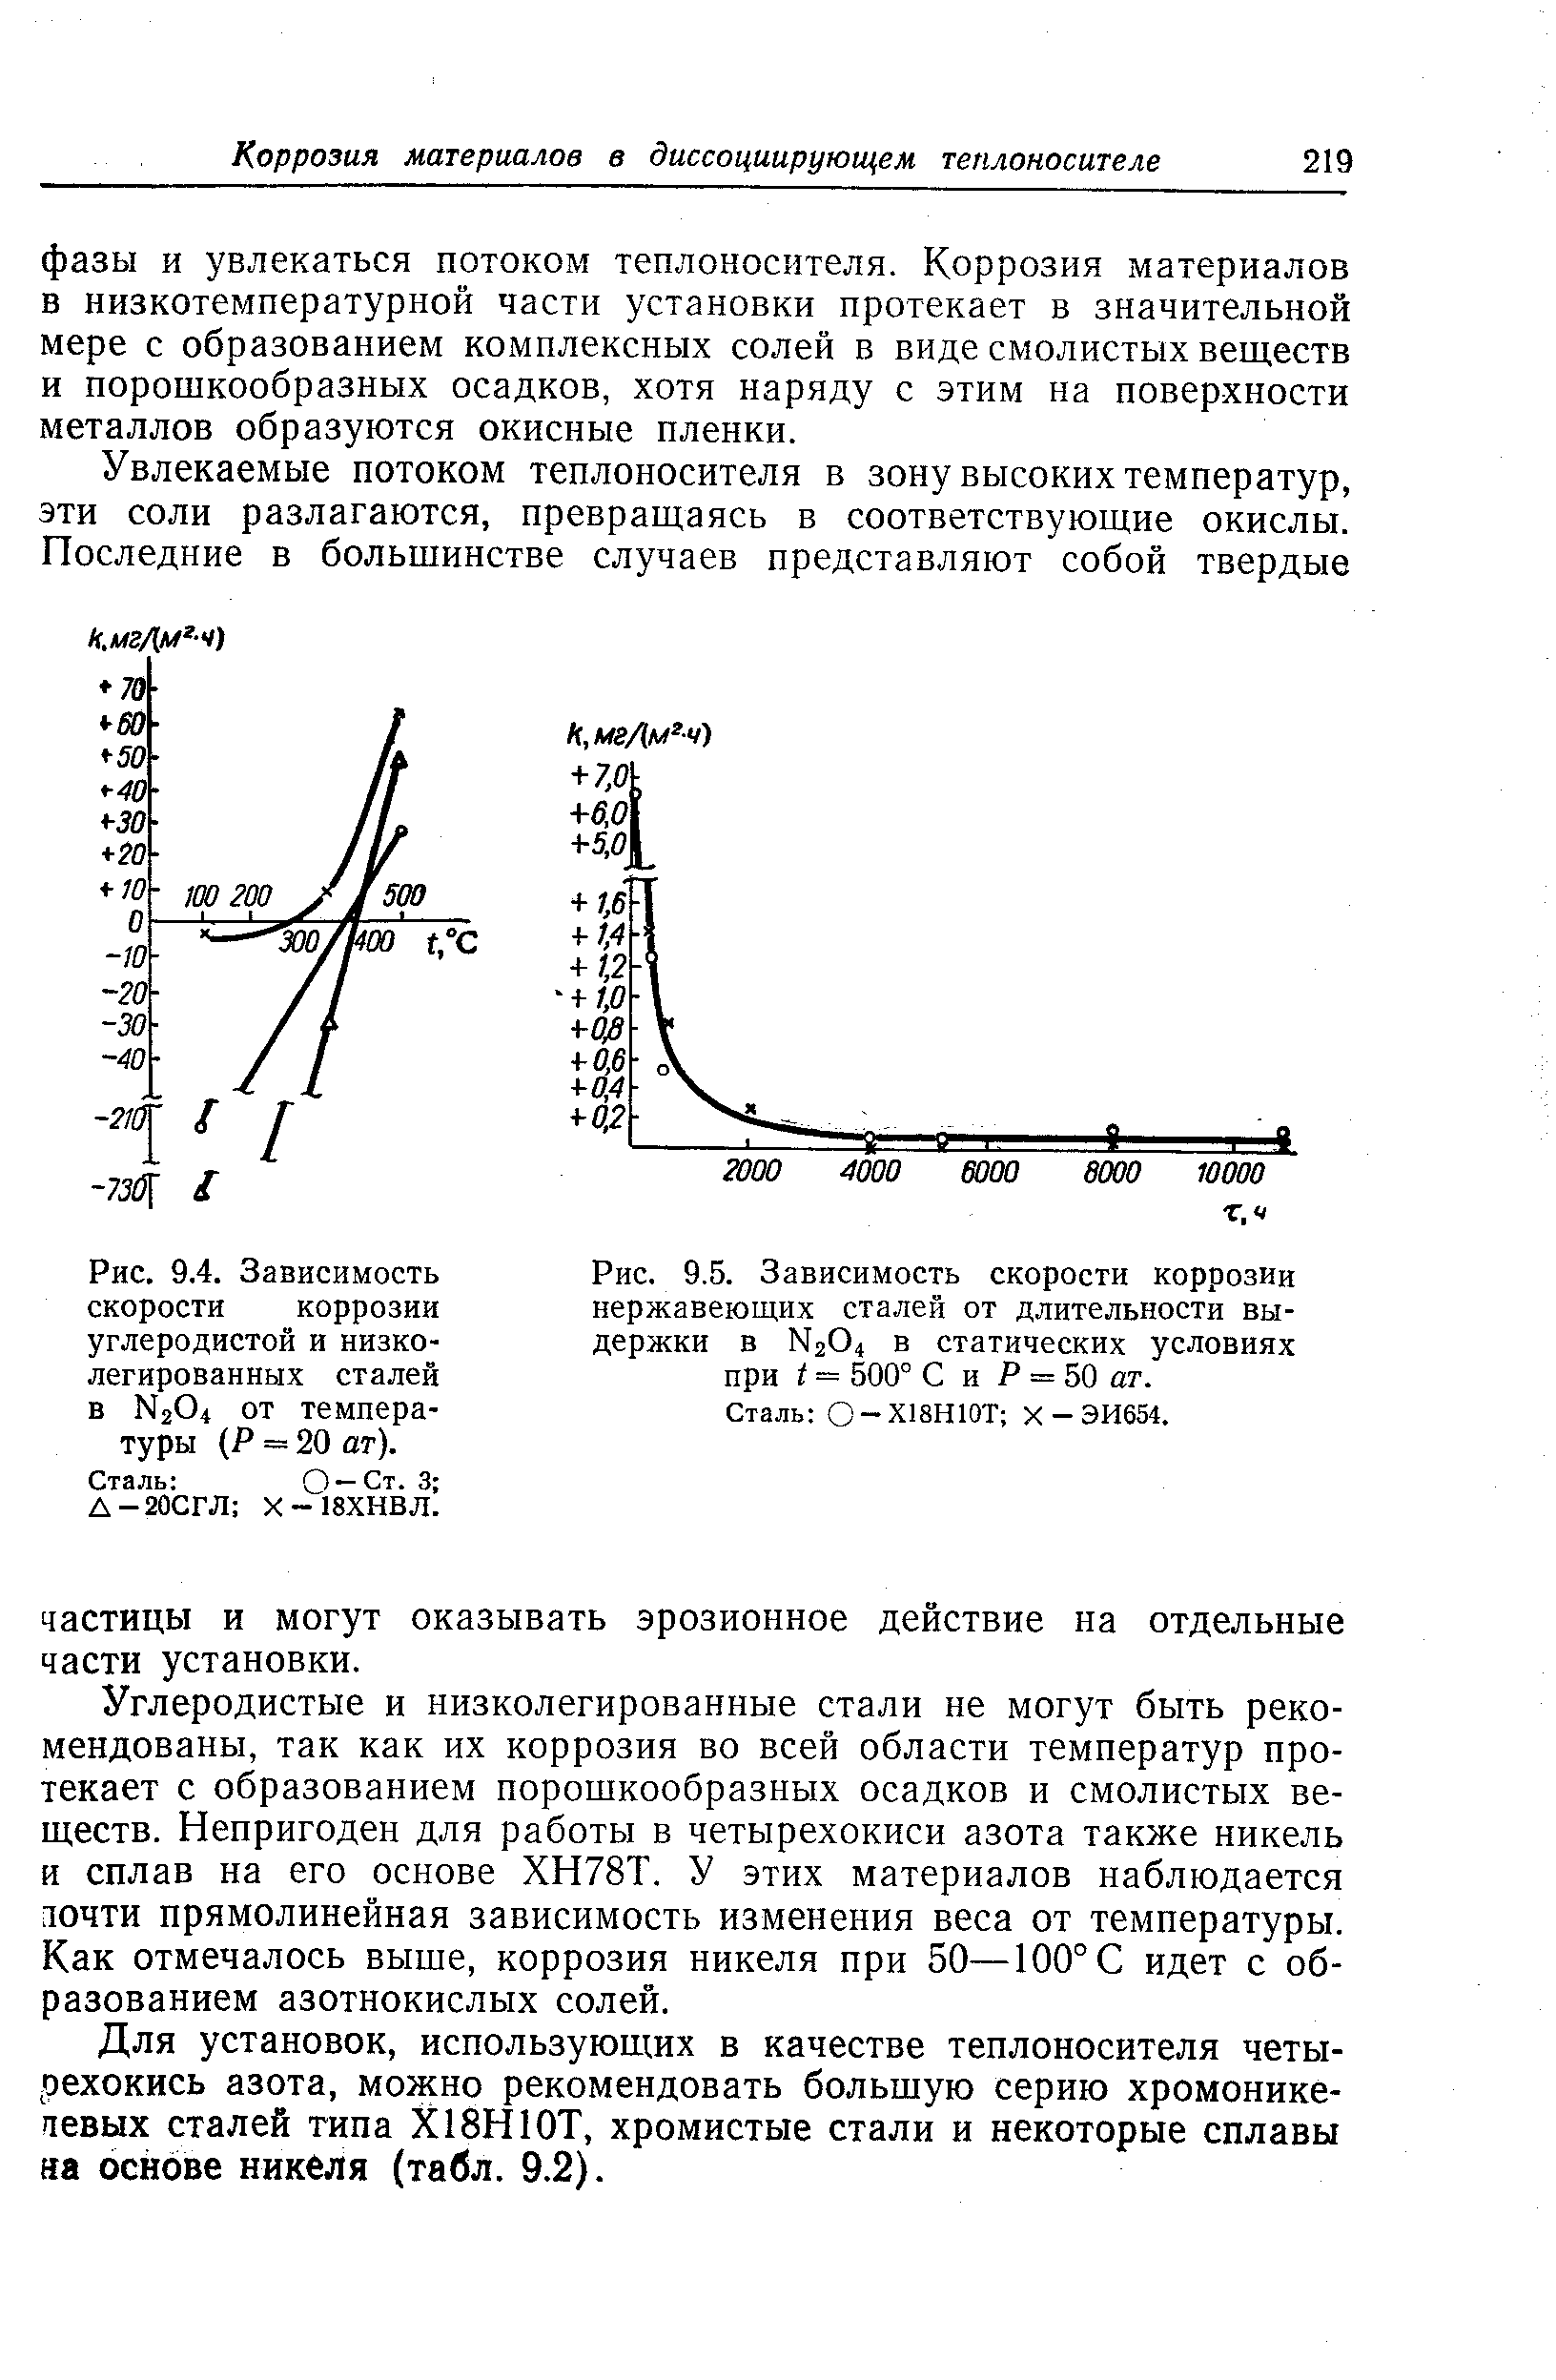 Рис. 9.4. Зависимость скорости коррозии углеродистой и низколегированных сталей в N264 от температуры (Р == 20 ат).
